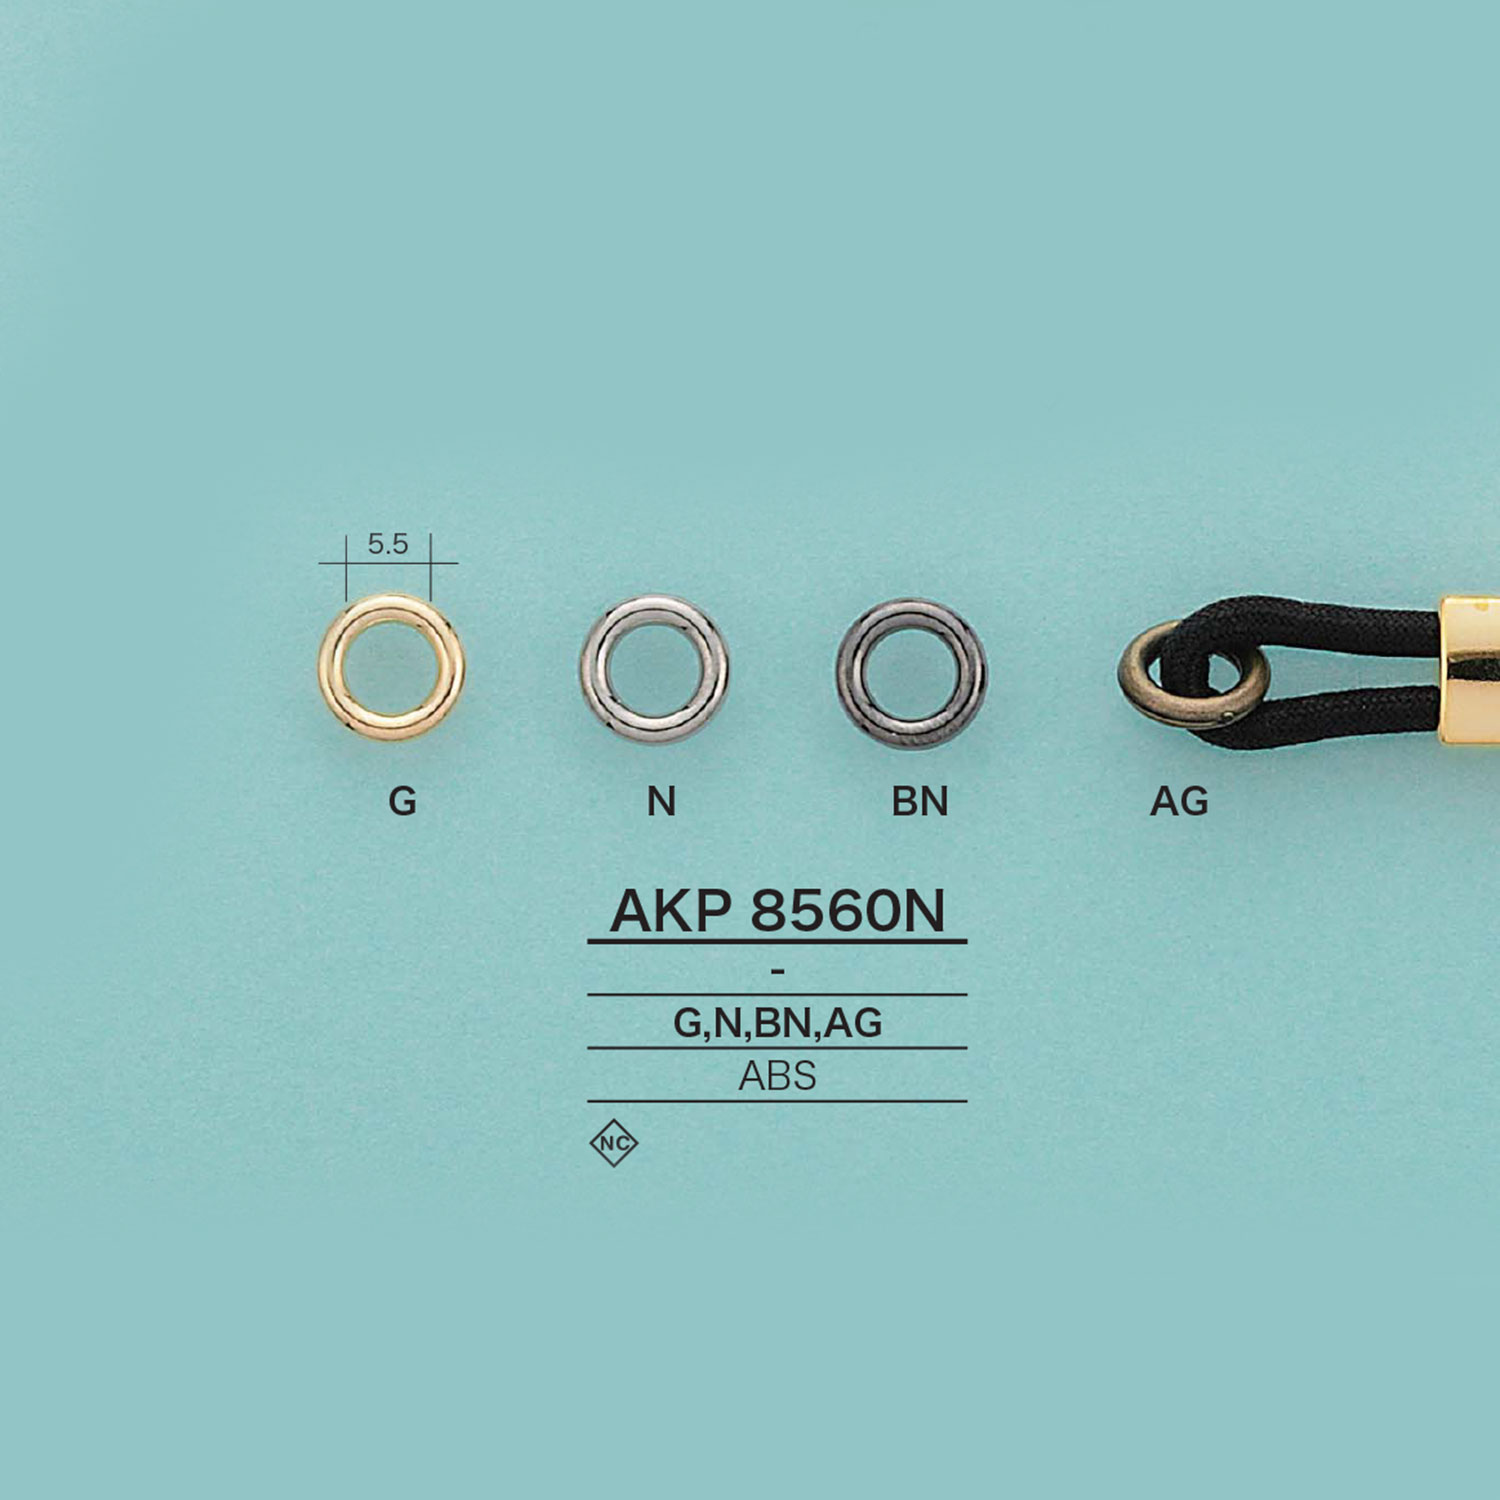 AKP8560N 环[扣和环] 爱丽丝纽扣